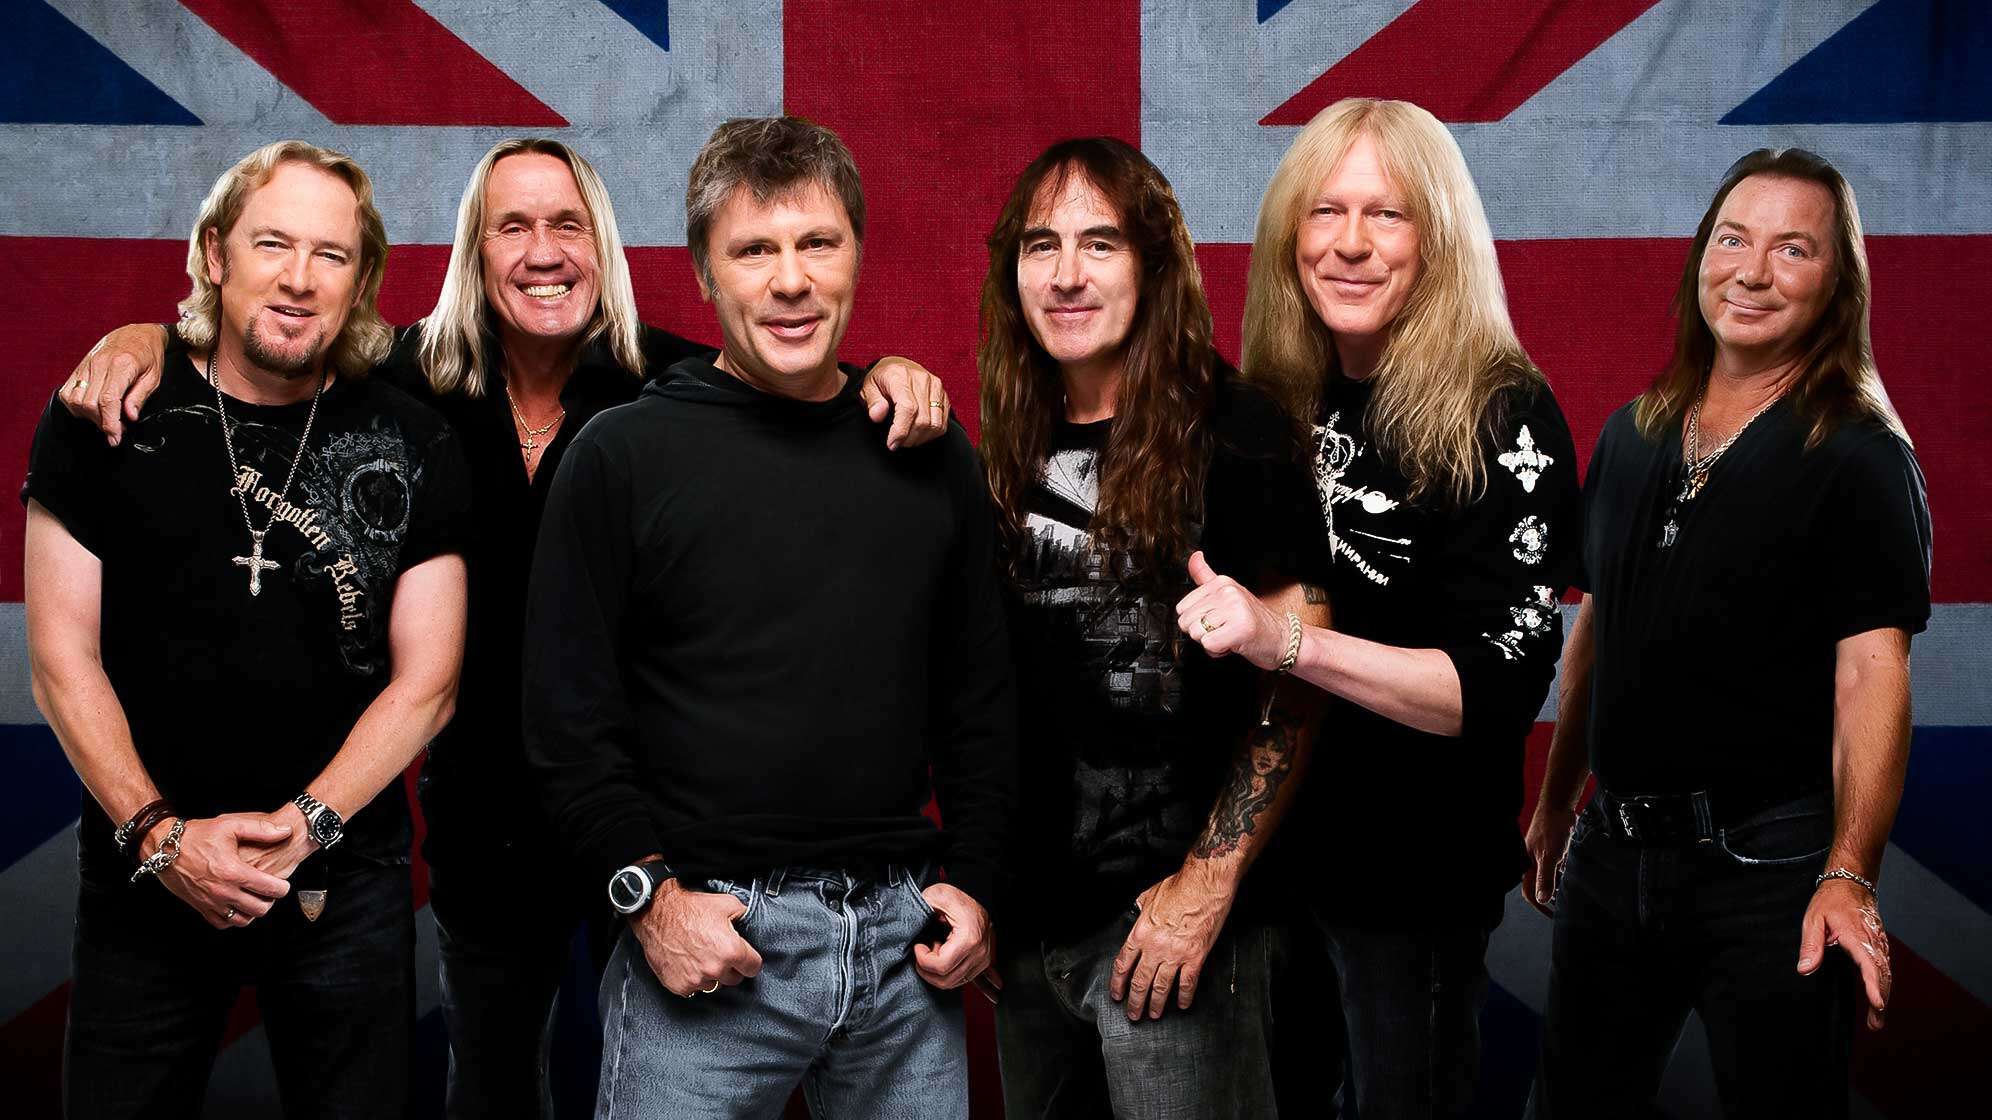 Das Bandfoto der Band Iron Maiden, die vor einer Großbritannien-Flagge steht. Von links nach rechts: Adrian Smith, Nicko McBrain, Bruce Dickinson, Steve Harris, Janick Gers, Dave Murray.